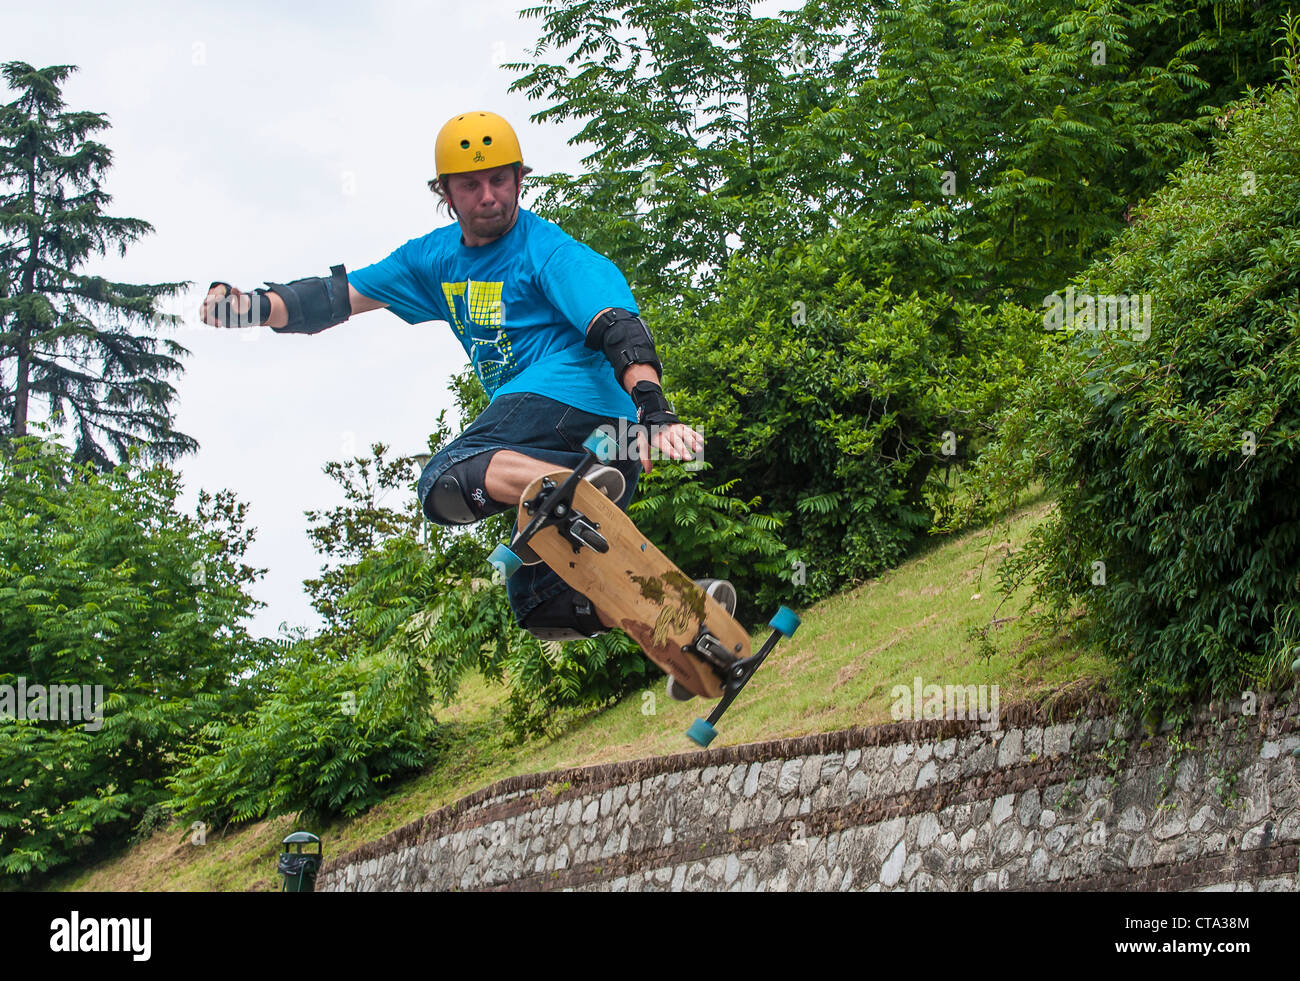 Europe Italy Piedmont, Turin Villa della Regina Free Board Acrobatic  Jump Stock Photo